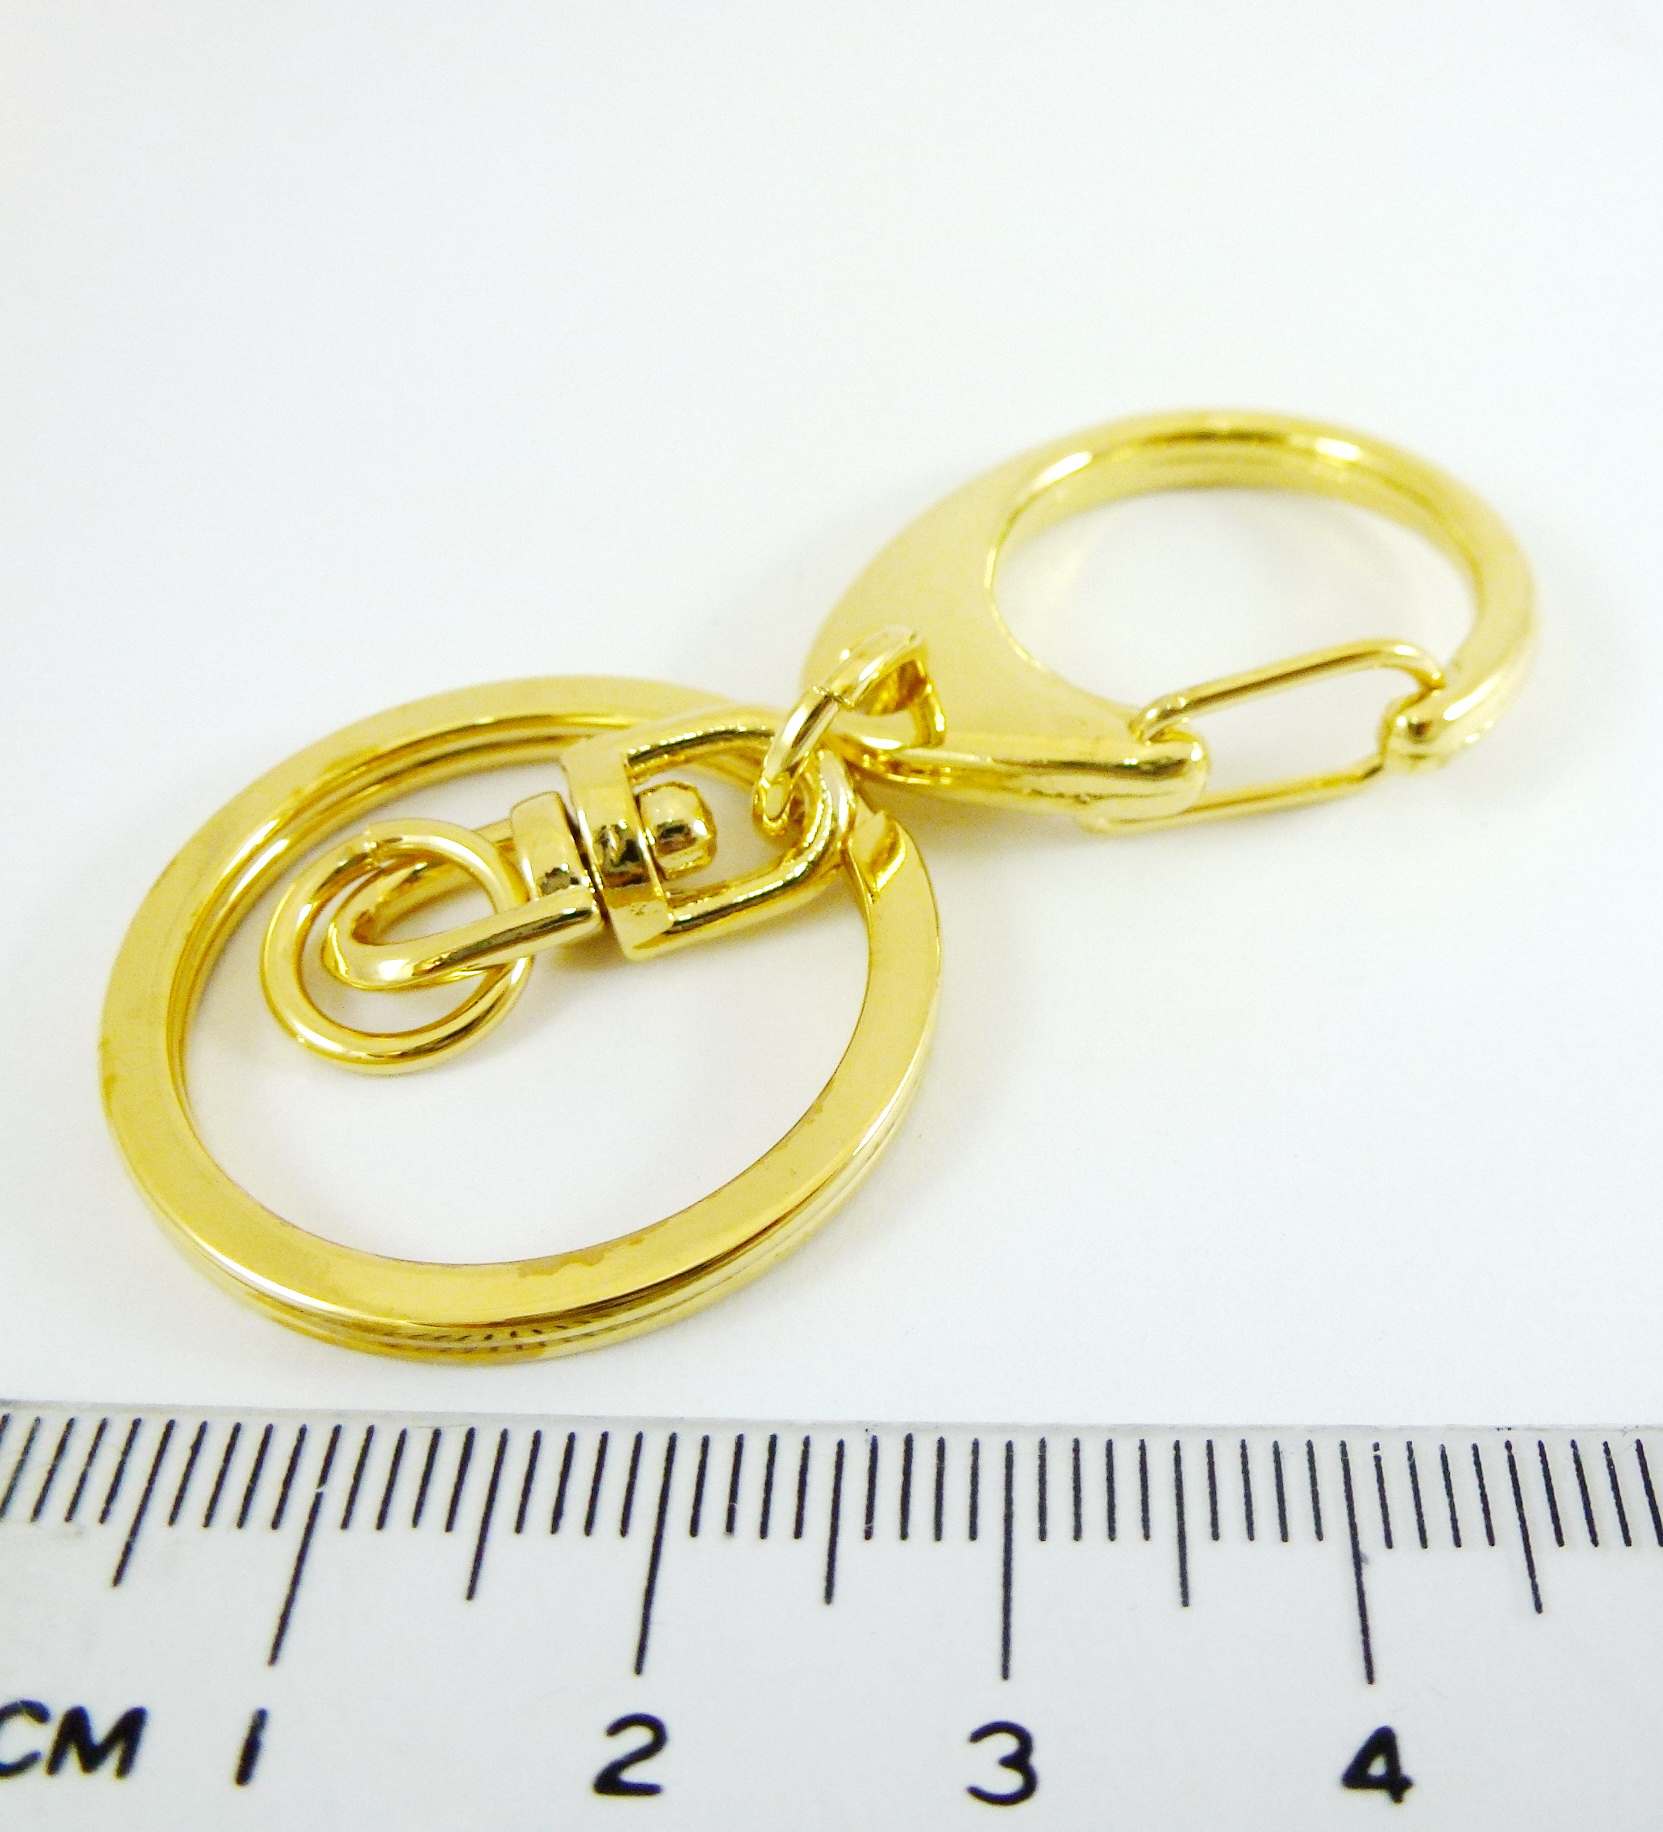 32mm銅鍍金色C形鉤附圓形雙圈鑰匙圈